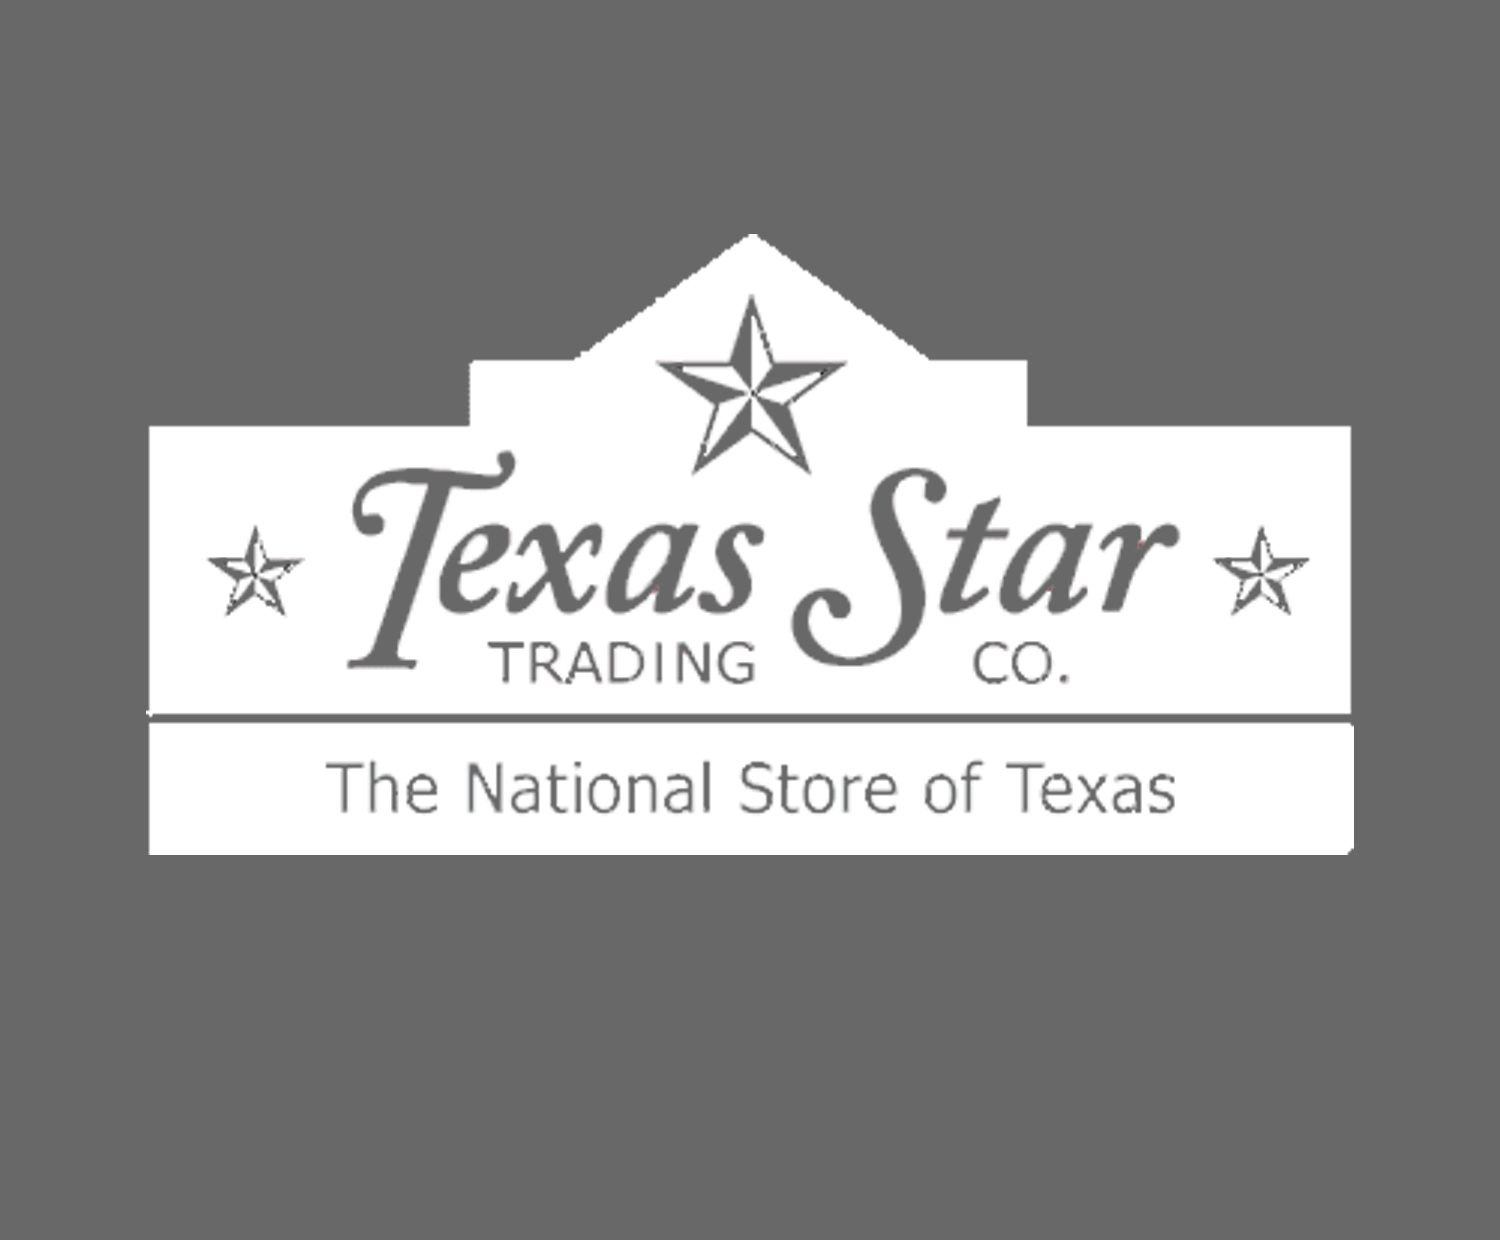 Texas Star Trading Company